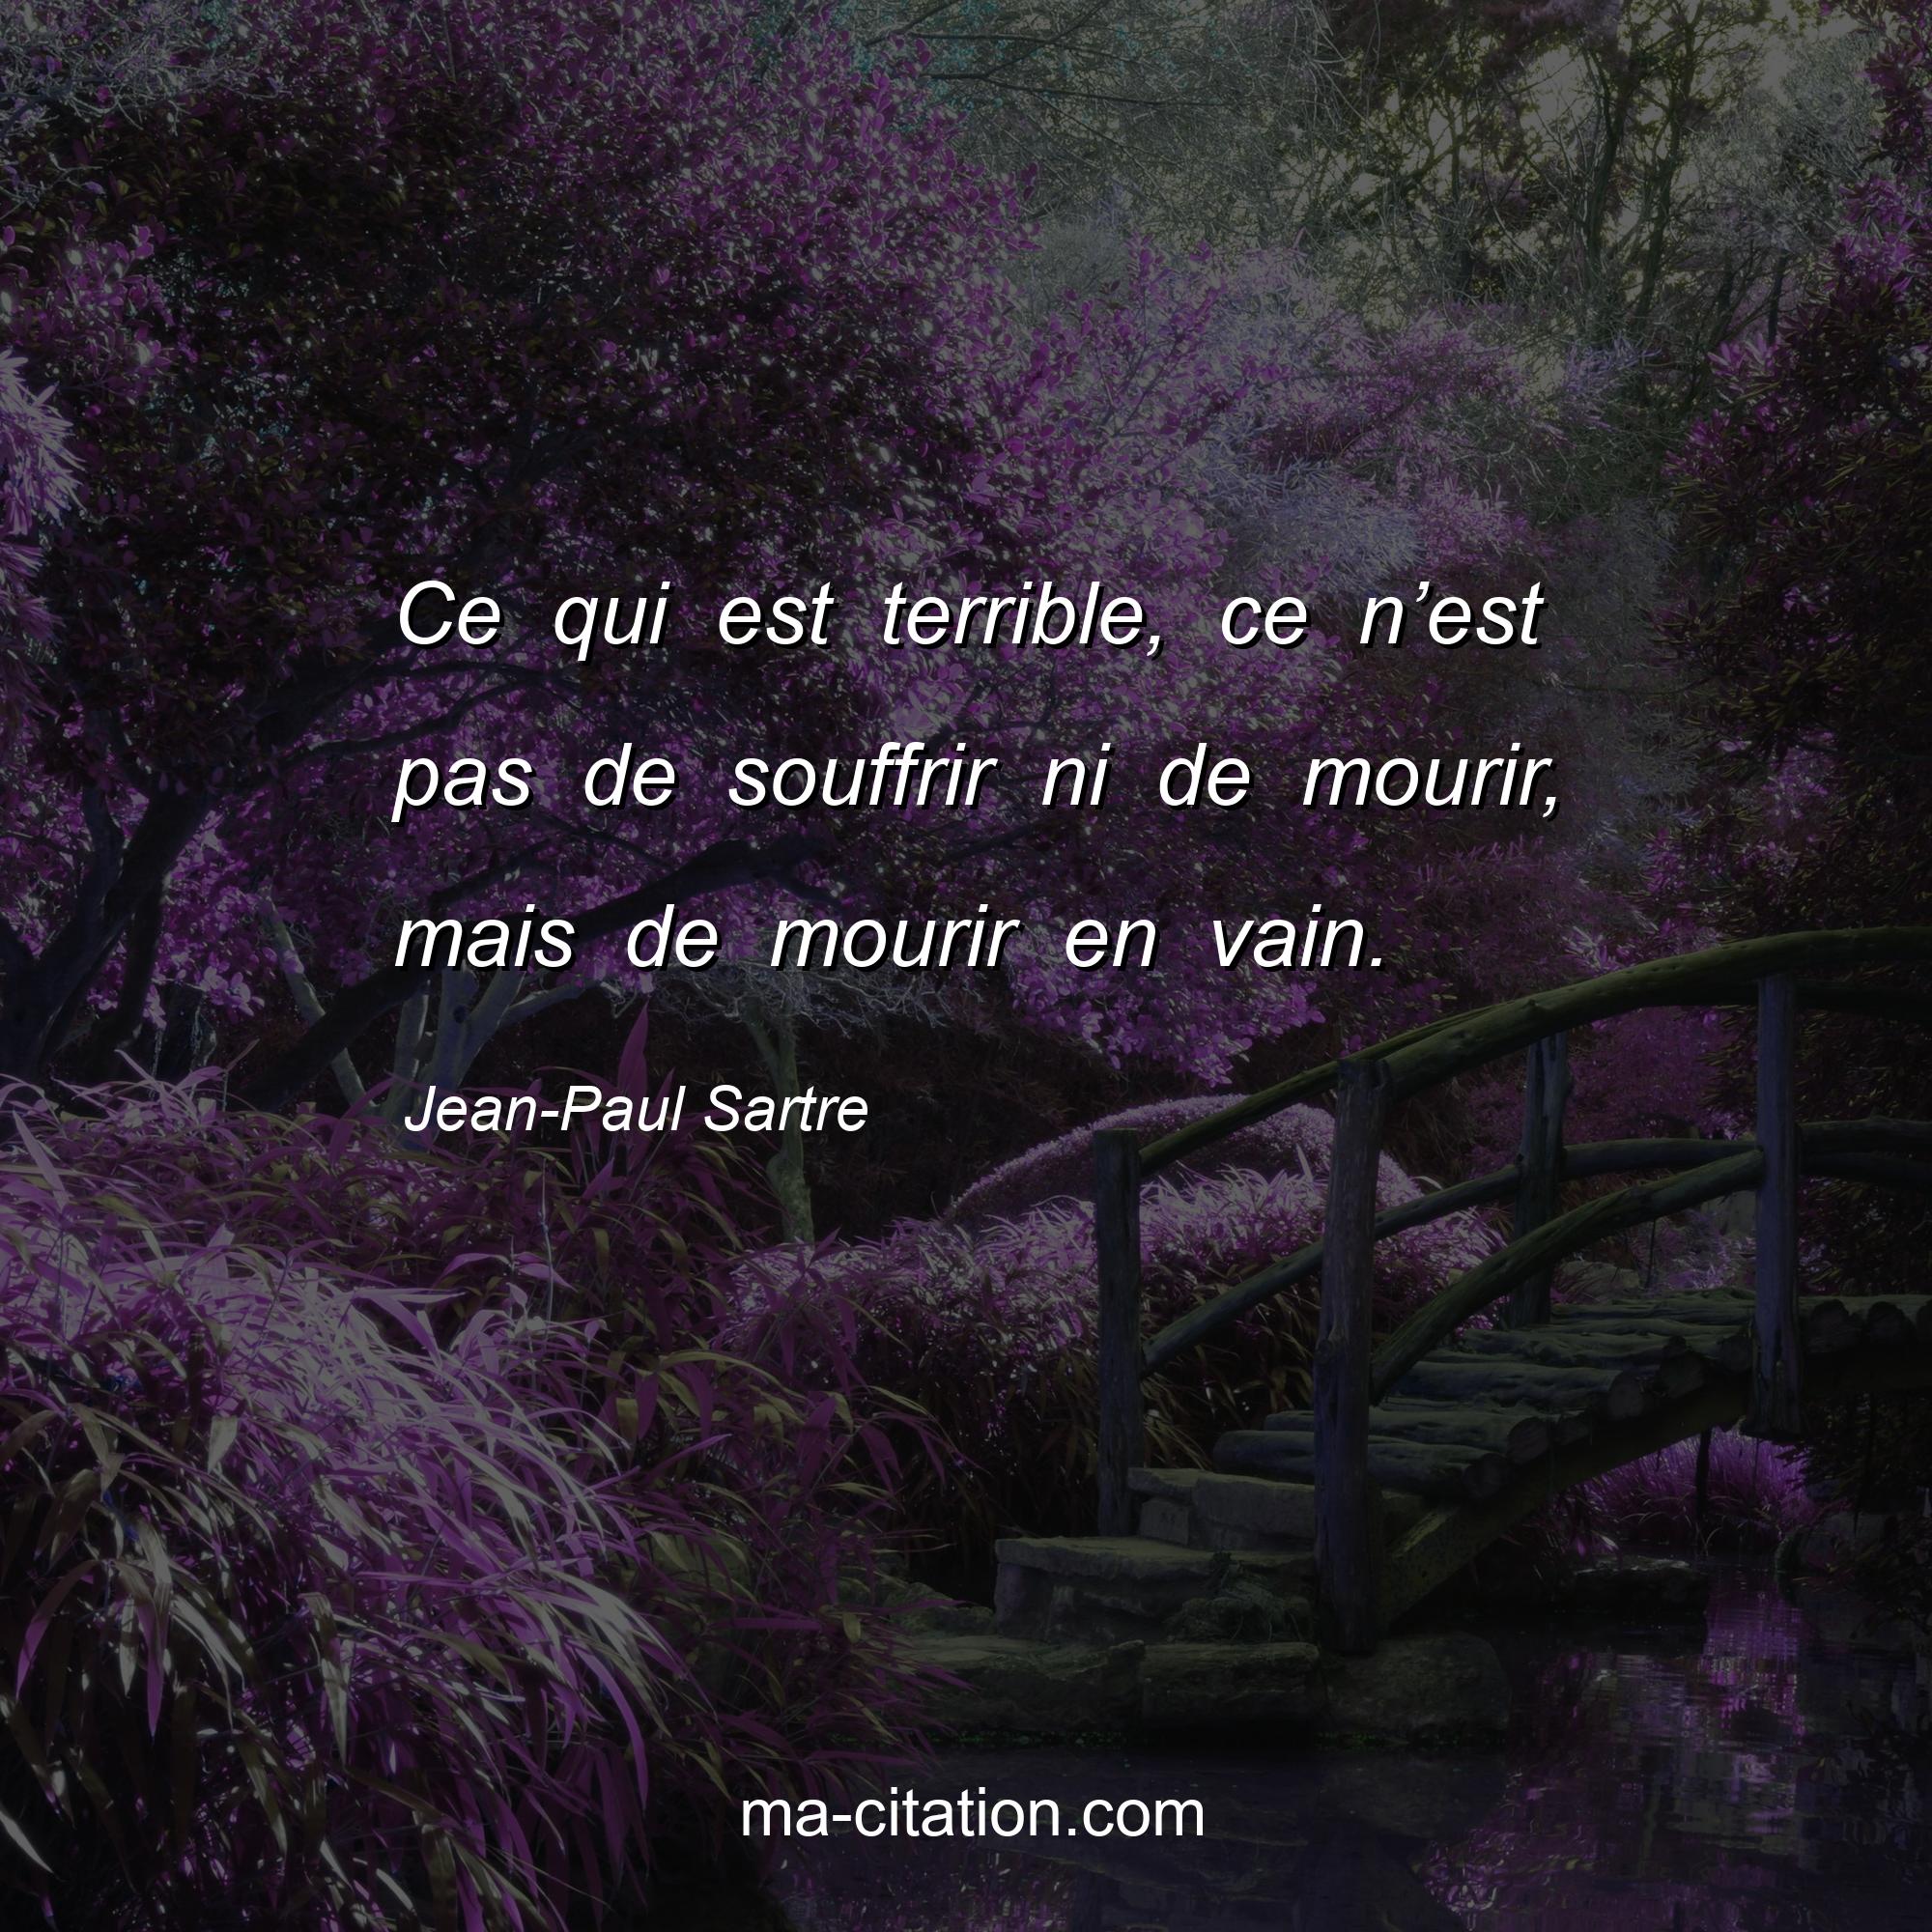 Jean-Paul Sartre : Ce qui est terrible, ce n’est pas de souffrir ni de mourir, mais de mourir en vain.